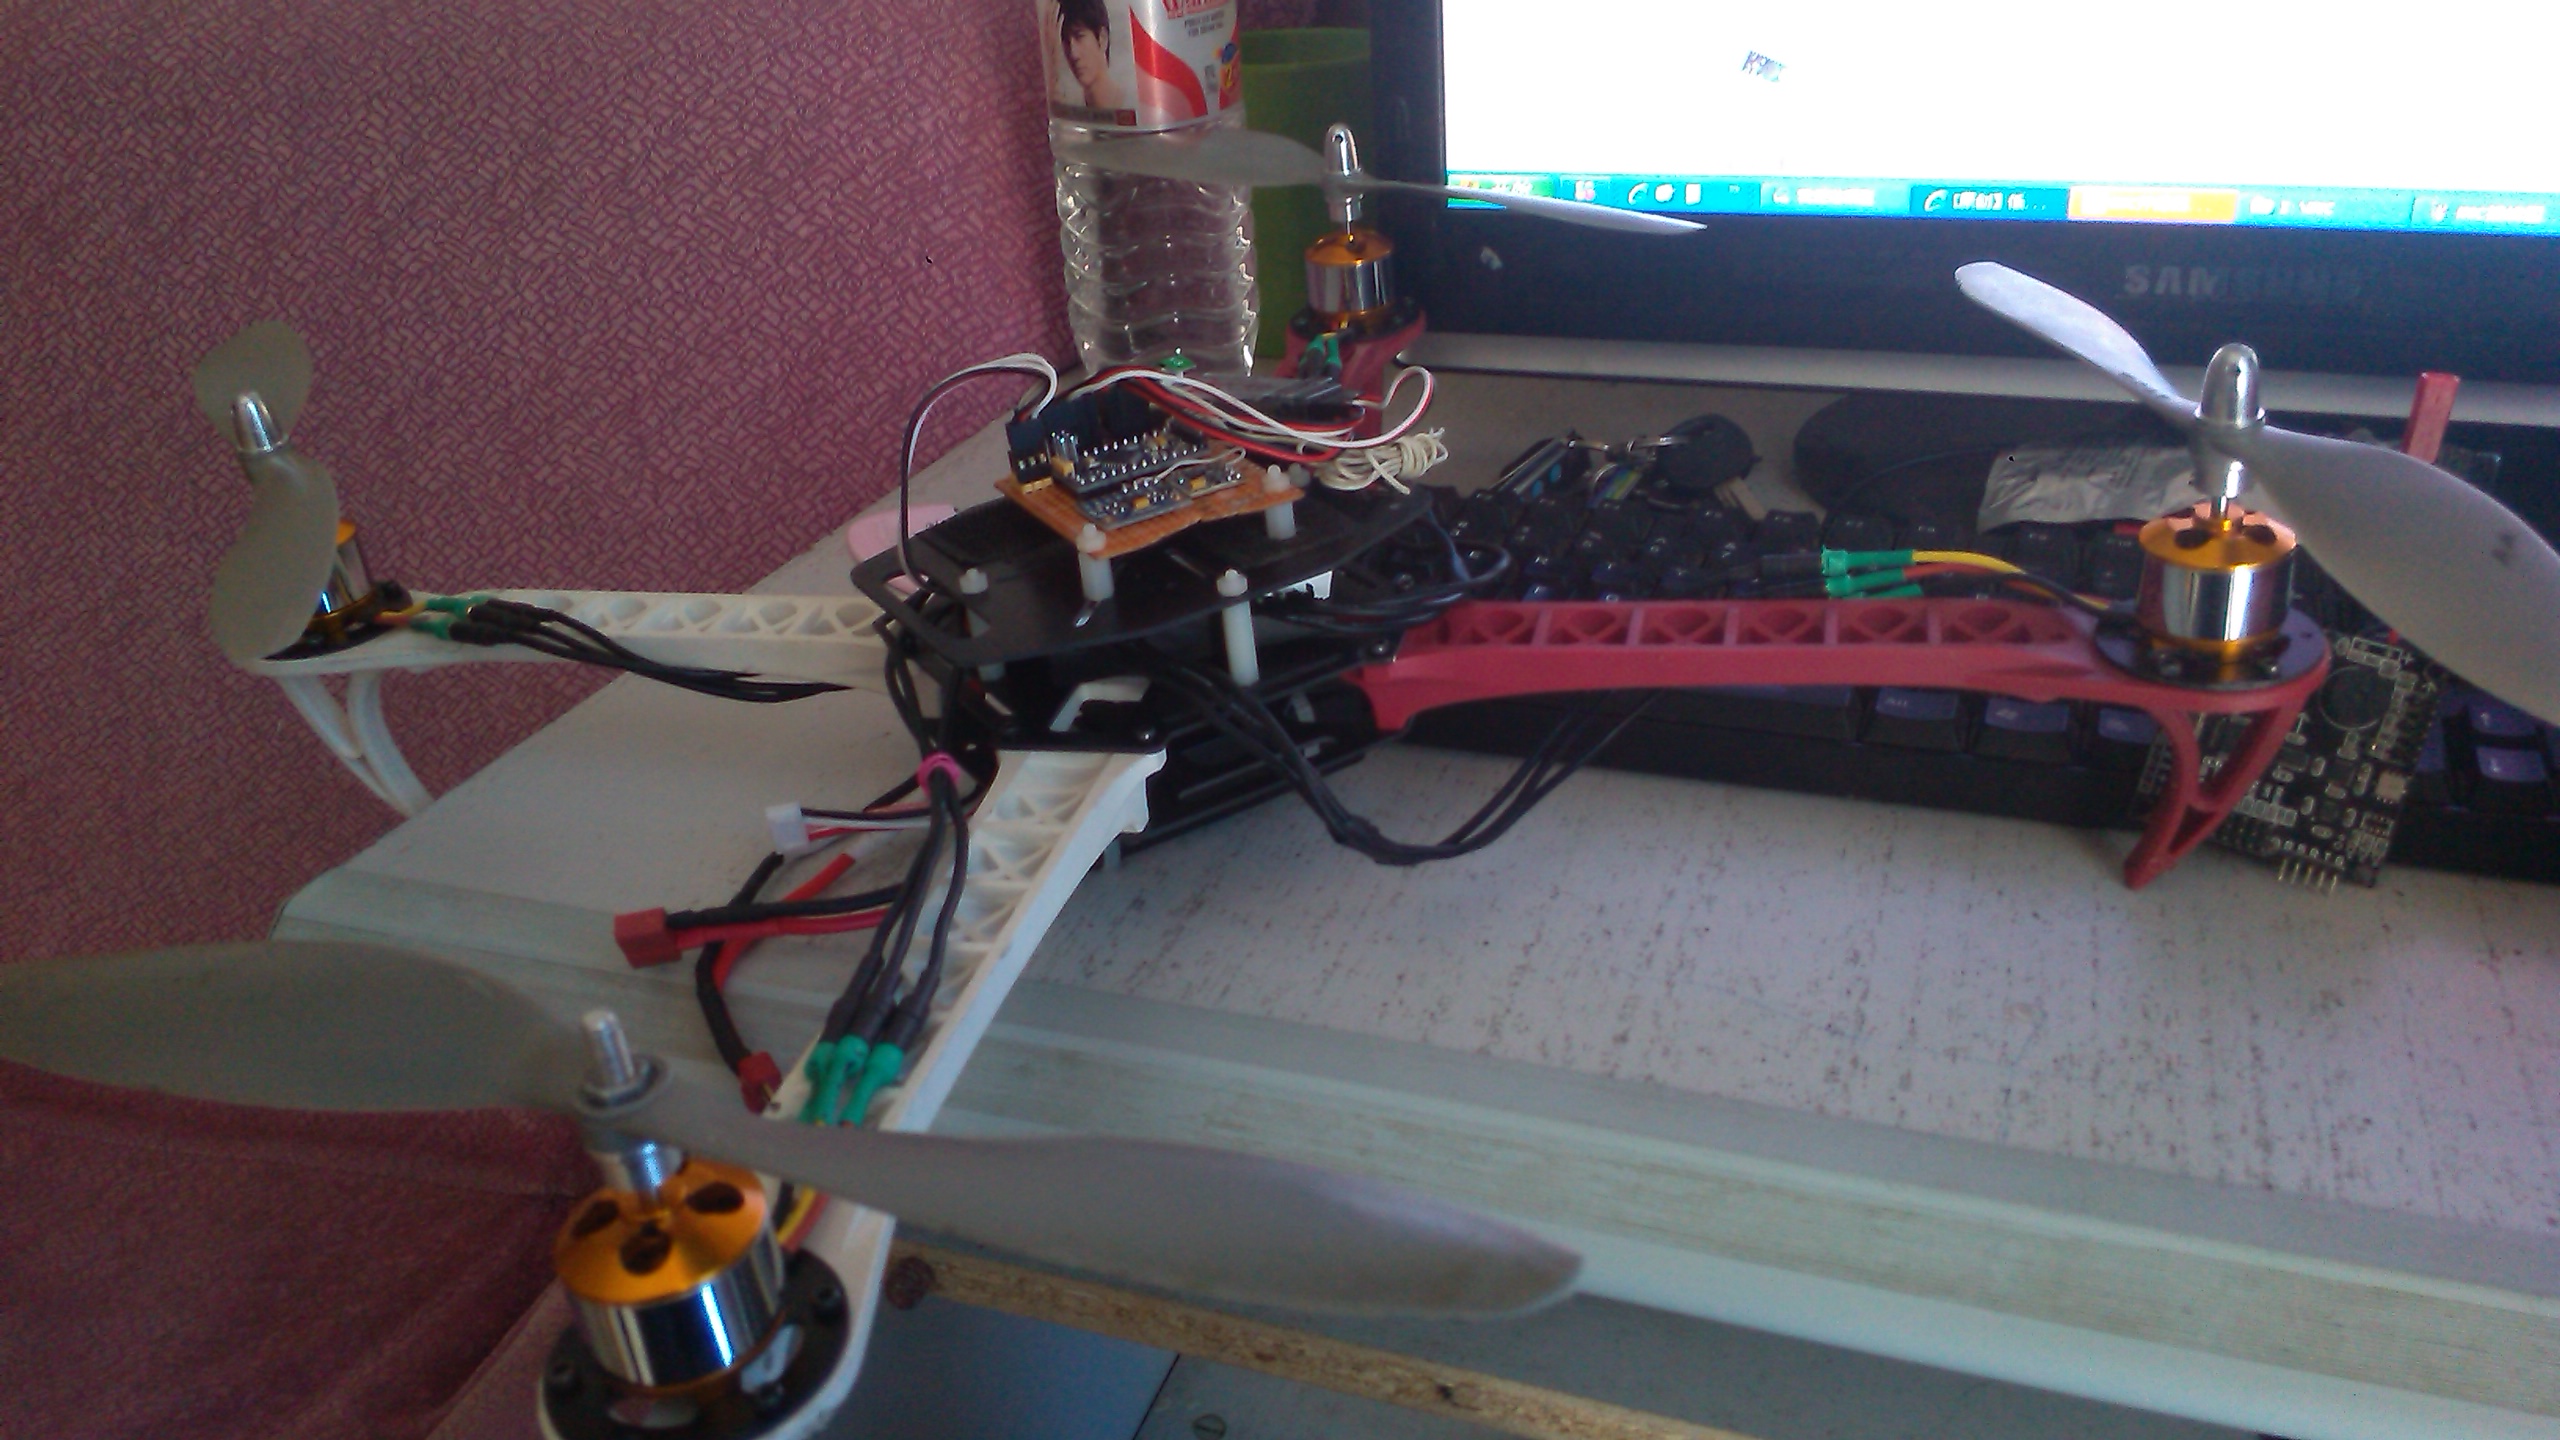 [原创】低成本自己做飞控，用arduino pro mini +GY-86模块 飞控,四轴,伤不起,好几百,逛论坛 作者:121341443 4095 